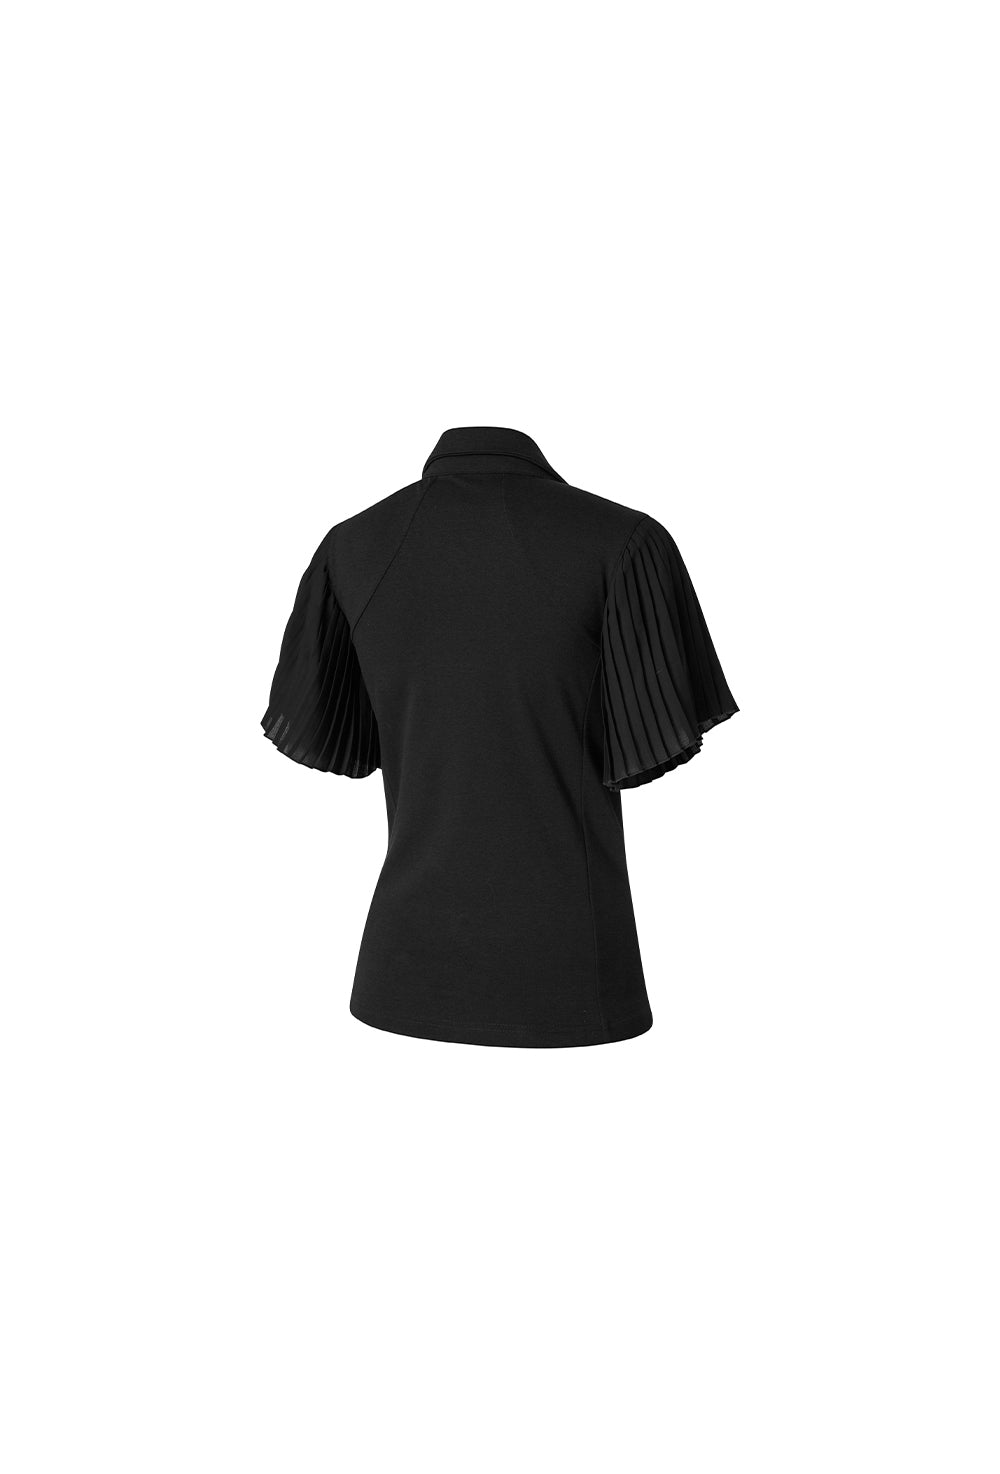 Pleated Polo Short Sleeve - Black